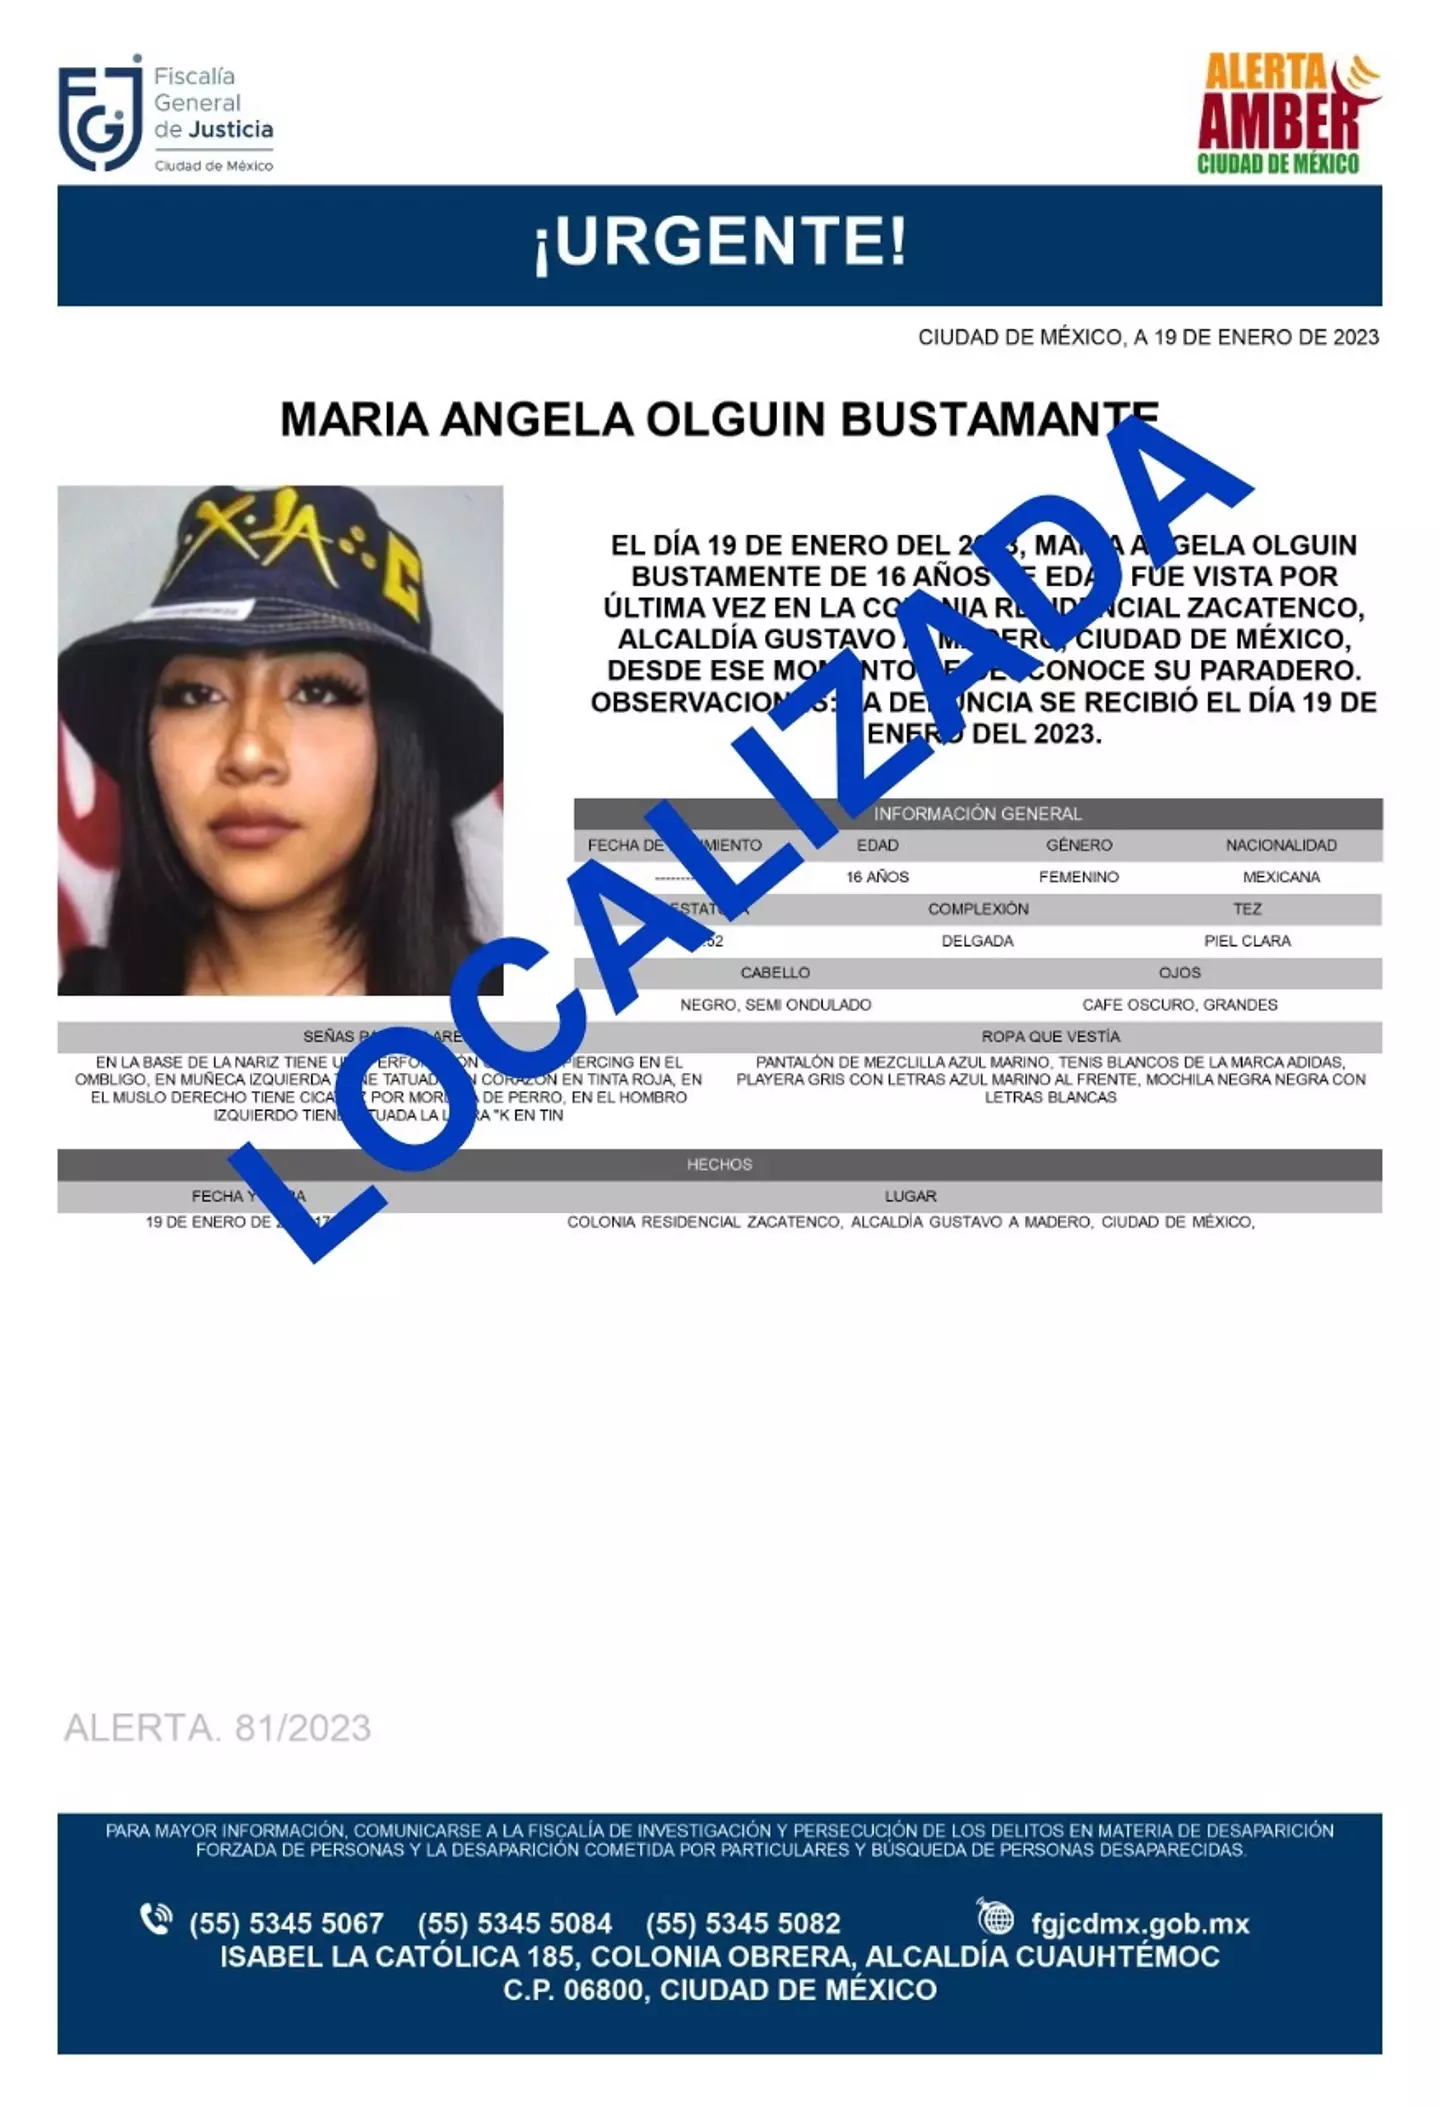 Maria Angela Olguín went missing for 48 hours.